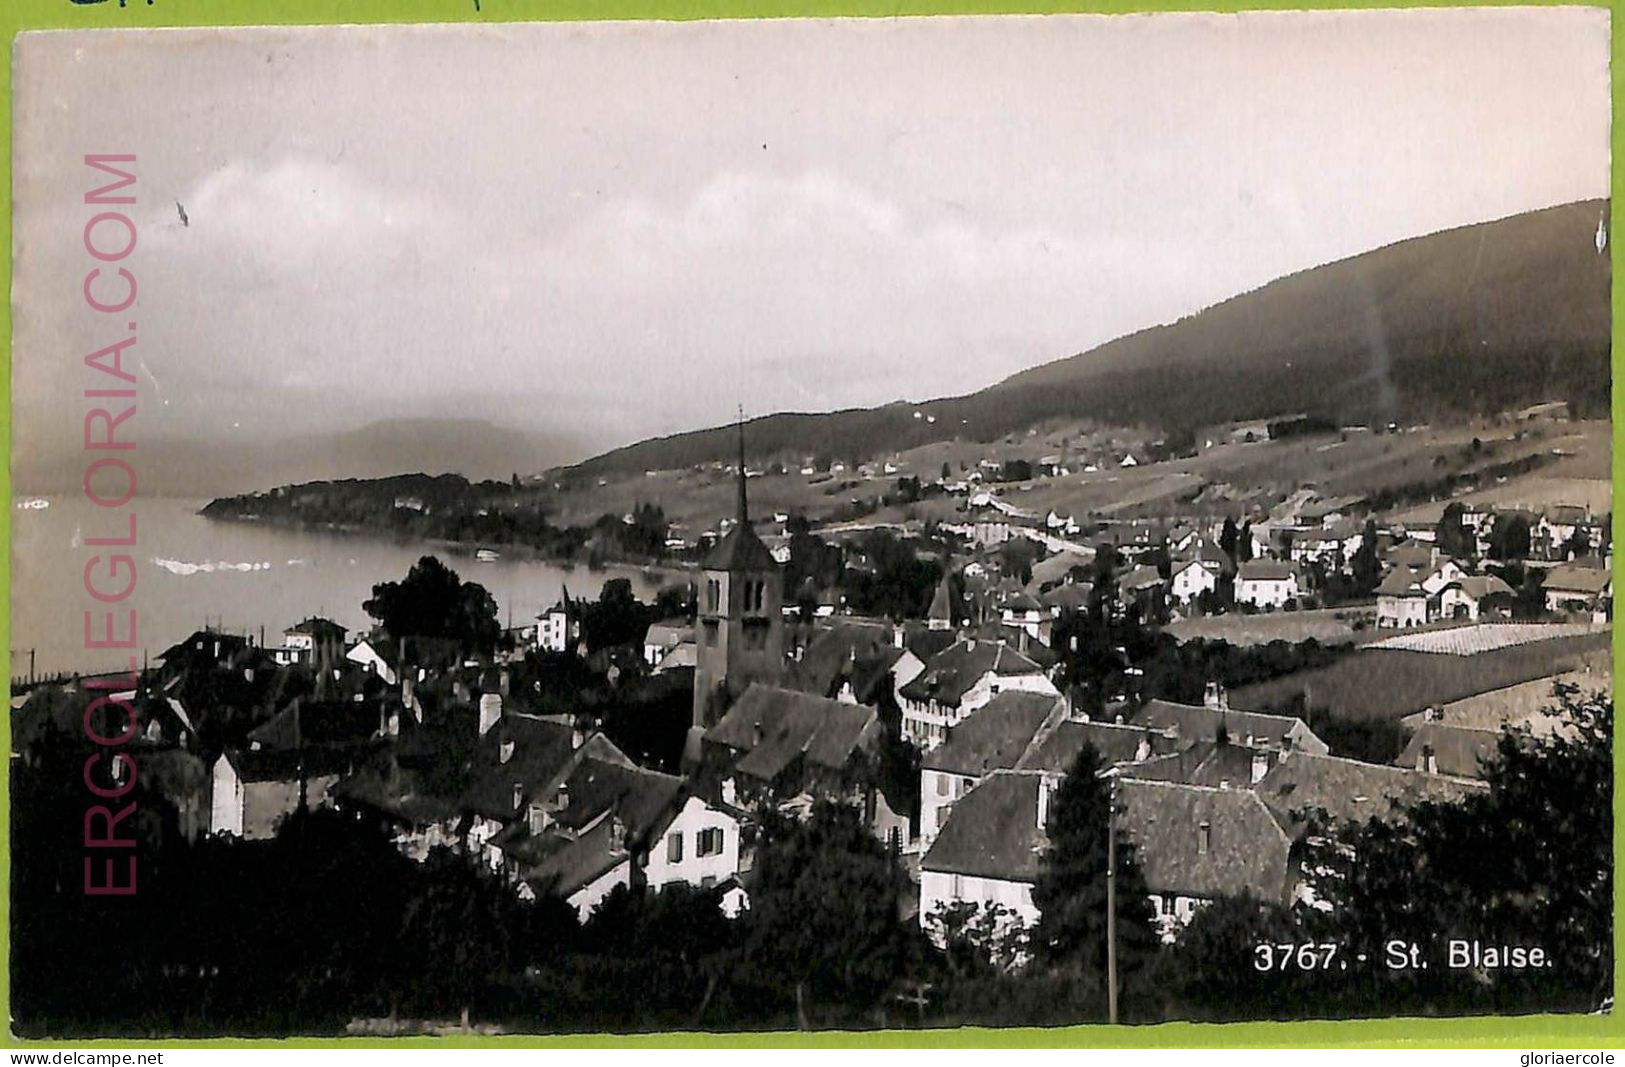 Ad6677 - SWITZERLAND Schweitz - Ansichtskarten VINTAGE POSTCARD - St.Blaise-1954 - Saint-Blaise